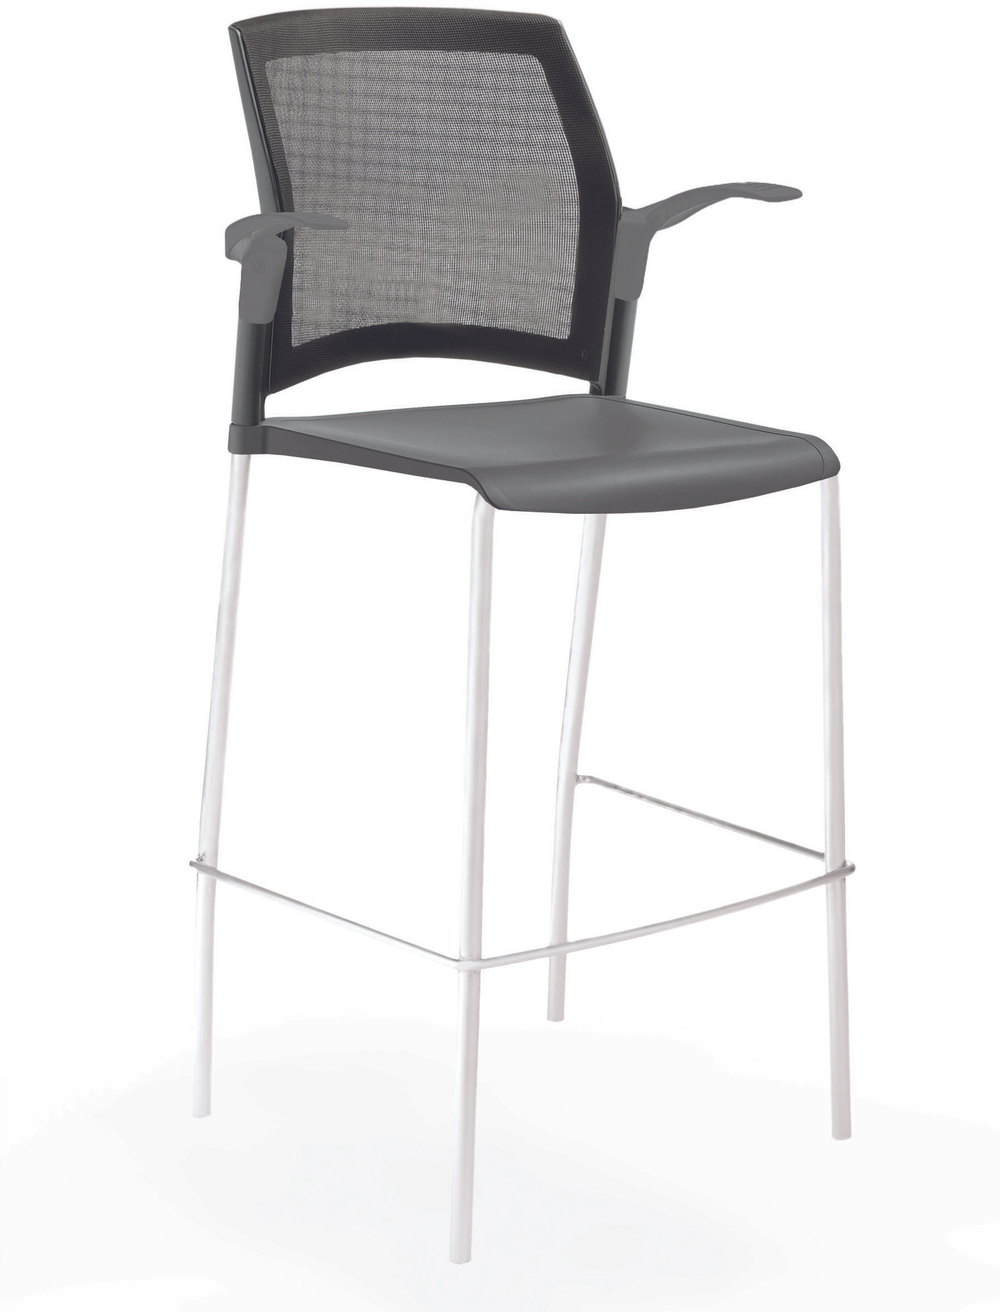 стул Rewind стул барный на 4 ногах, каркас белый, пластик серый, спинка-сетка, с открытыми подлокотниками